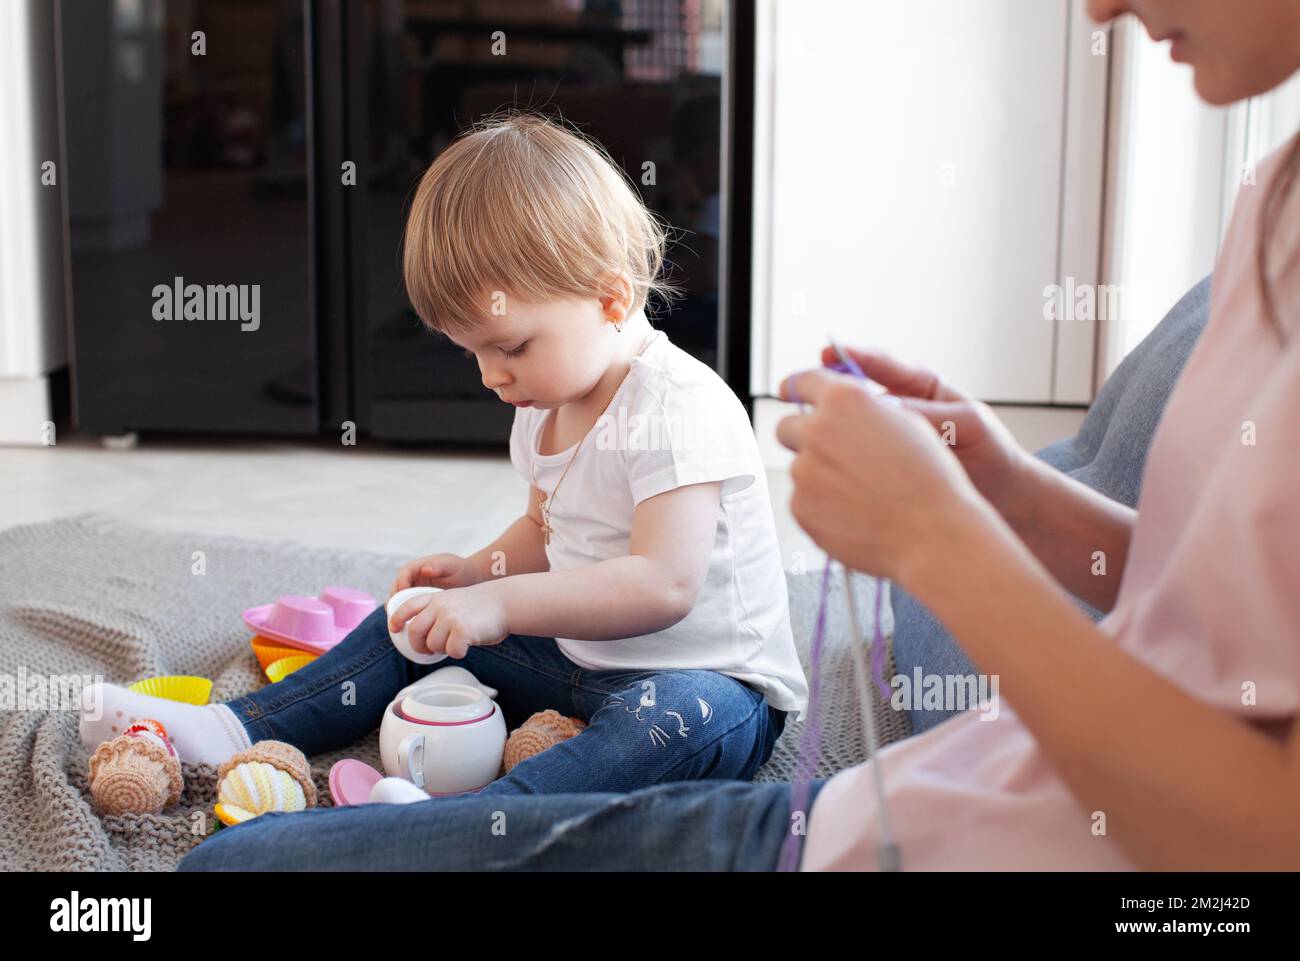 Kleine Tochter spielt, während ihre Mutter strickt, Arbeit oder Hobby macht. Familie, ehrliches Familienleben mit Baby. Authentischer Lifestyle Stockfoto